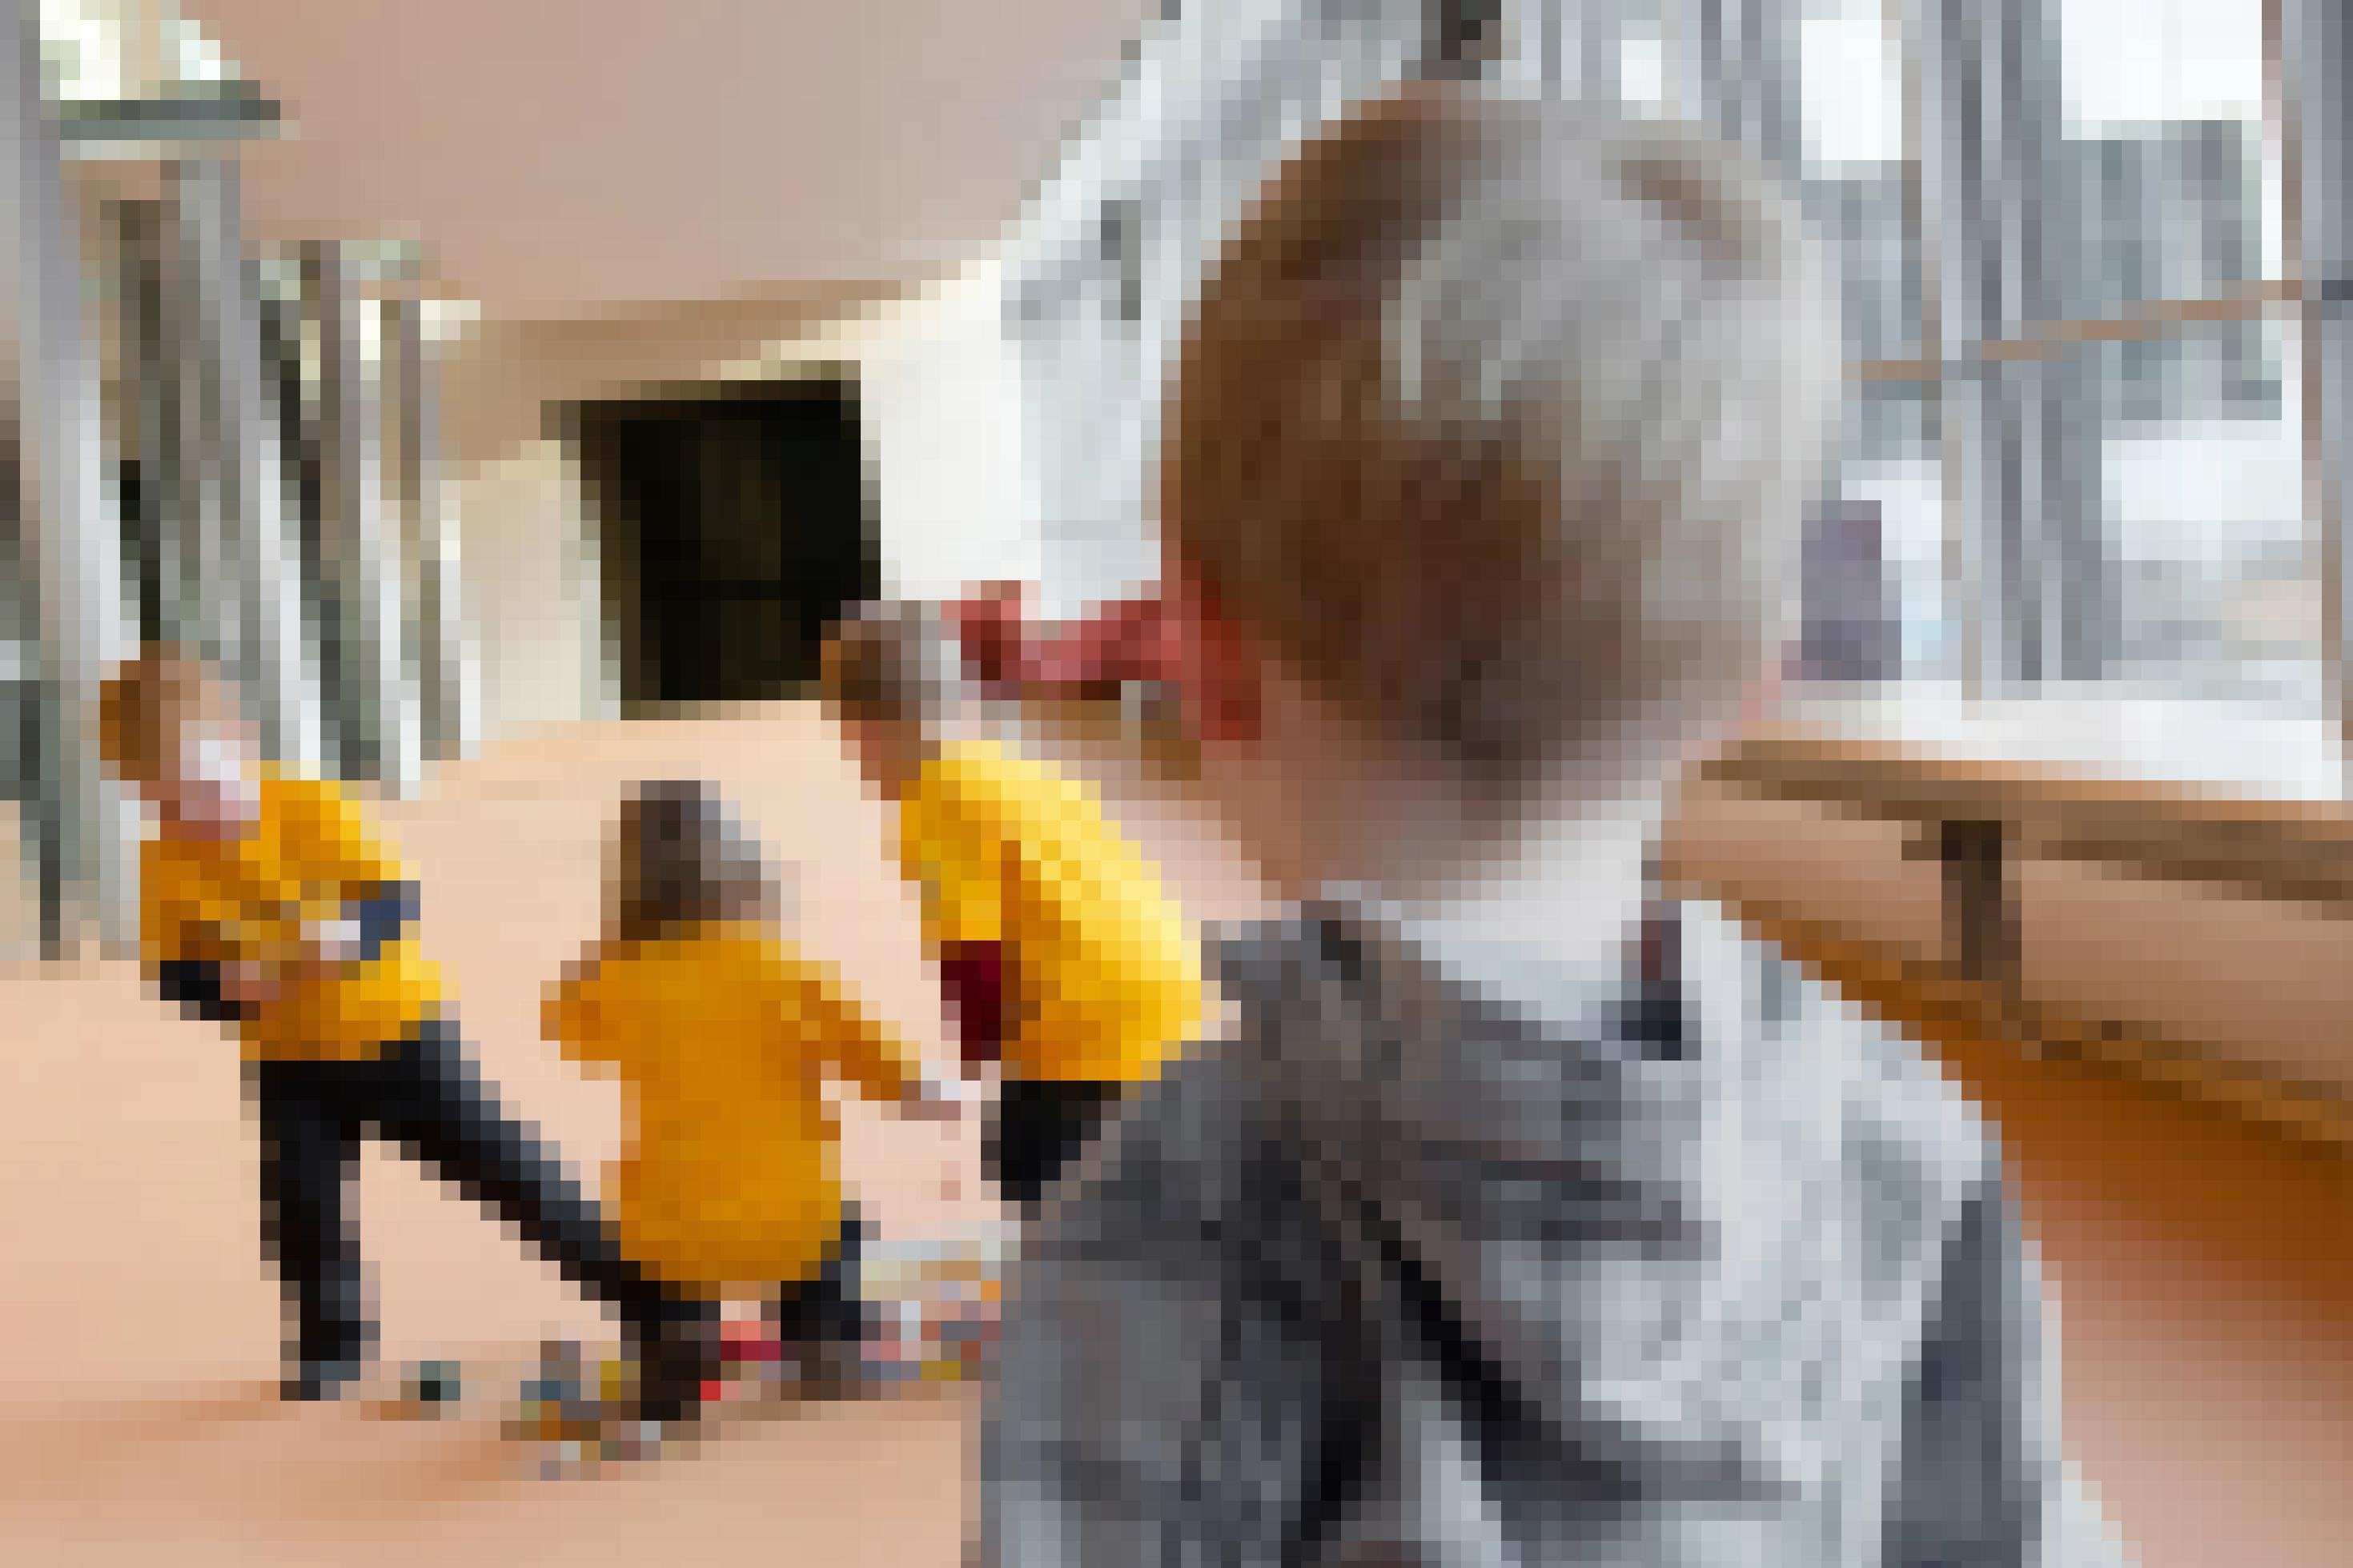 Auf dem Flur eines Institutes sind drei kleine Kinder in gelben Hemden zu sehen, auf dem Boden vor sich diverse Gegenstände, die offenbar in ein Spiel vertieft sind. Im Vordergrund ist der Hinterkopf und Rücken eines Jungen in ähnlichem Alter zu sehen, der den anderen aufmerksam zuschaut.